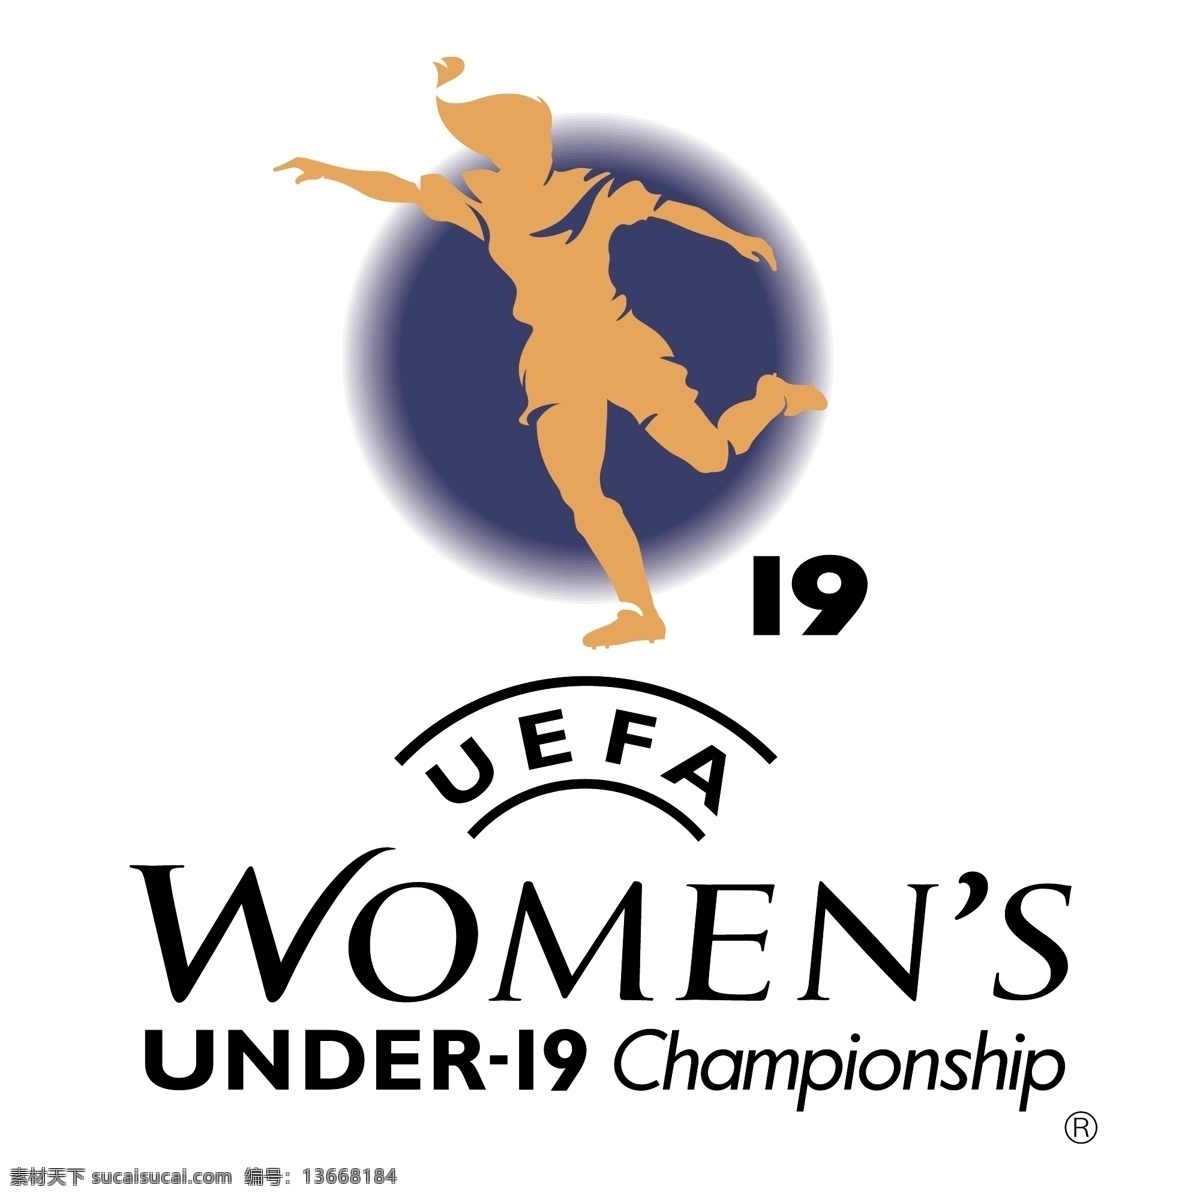 欧 足联 女子 冠军 免费 女足 u19 锦标赛 徽标 标识 psd源文件 logo设计